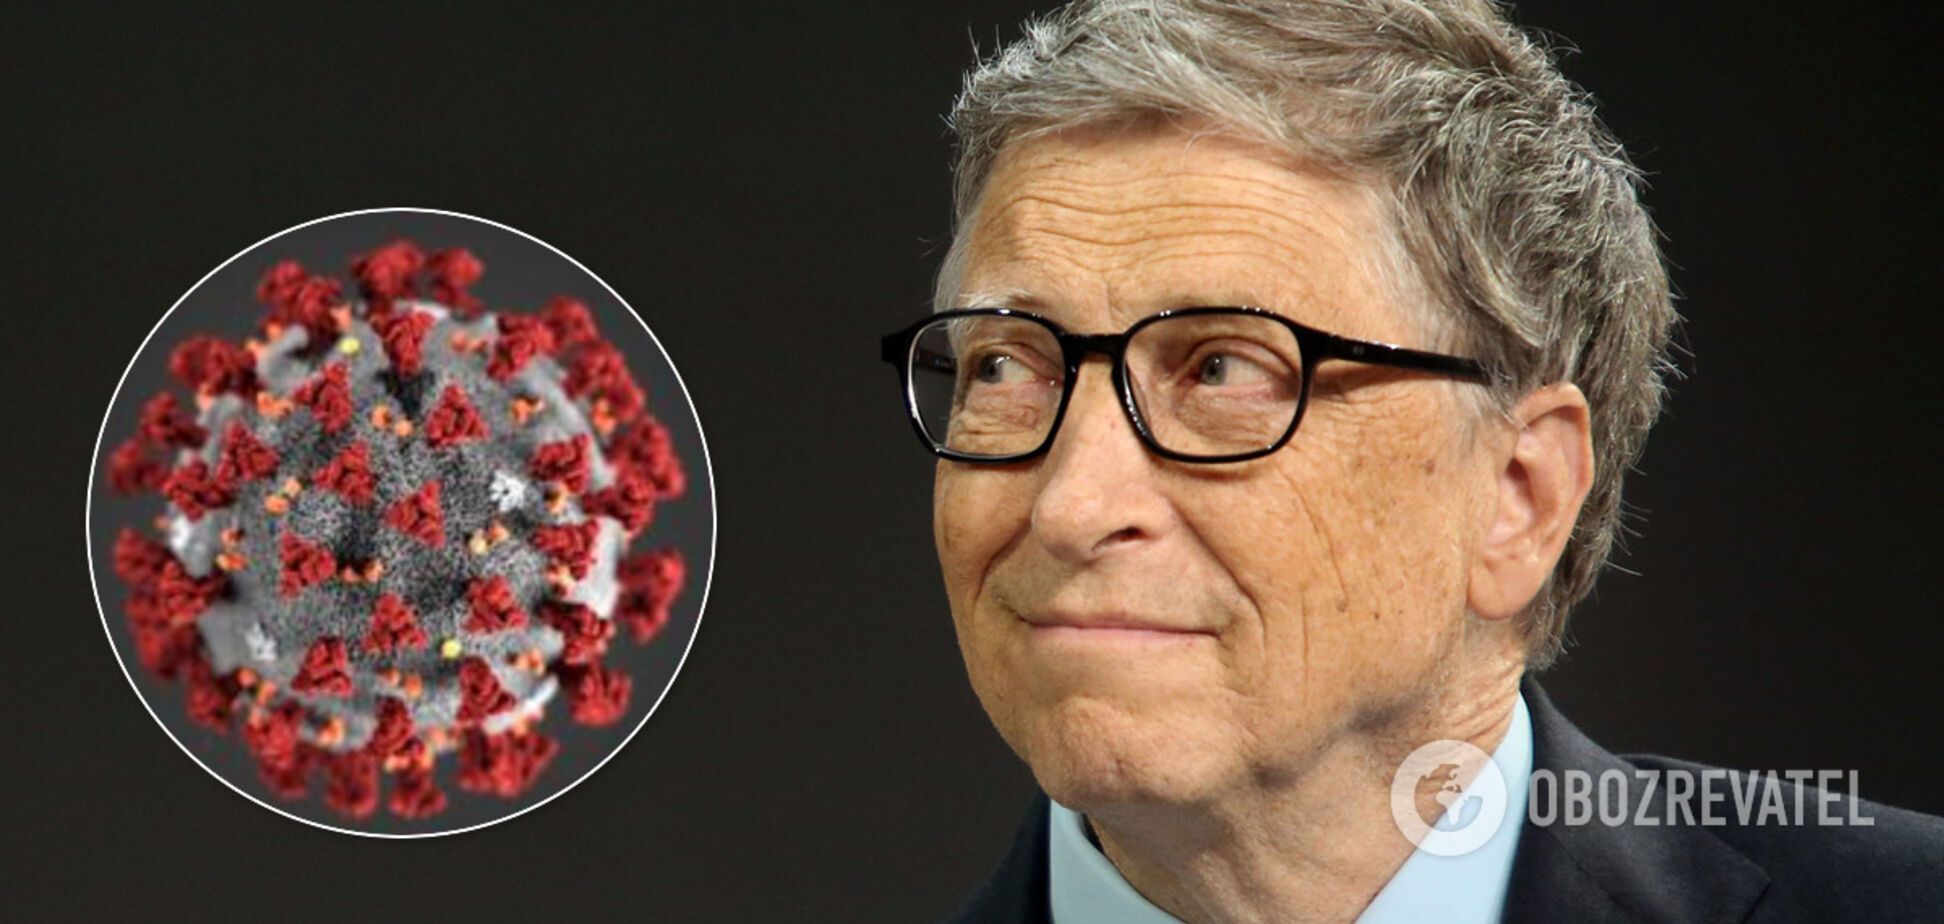 Білл Гейтс відповів на звинувачення через коронавірус